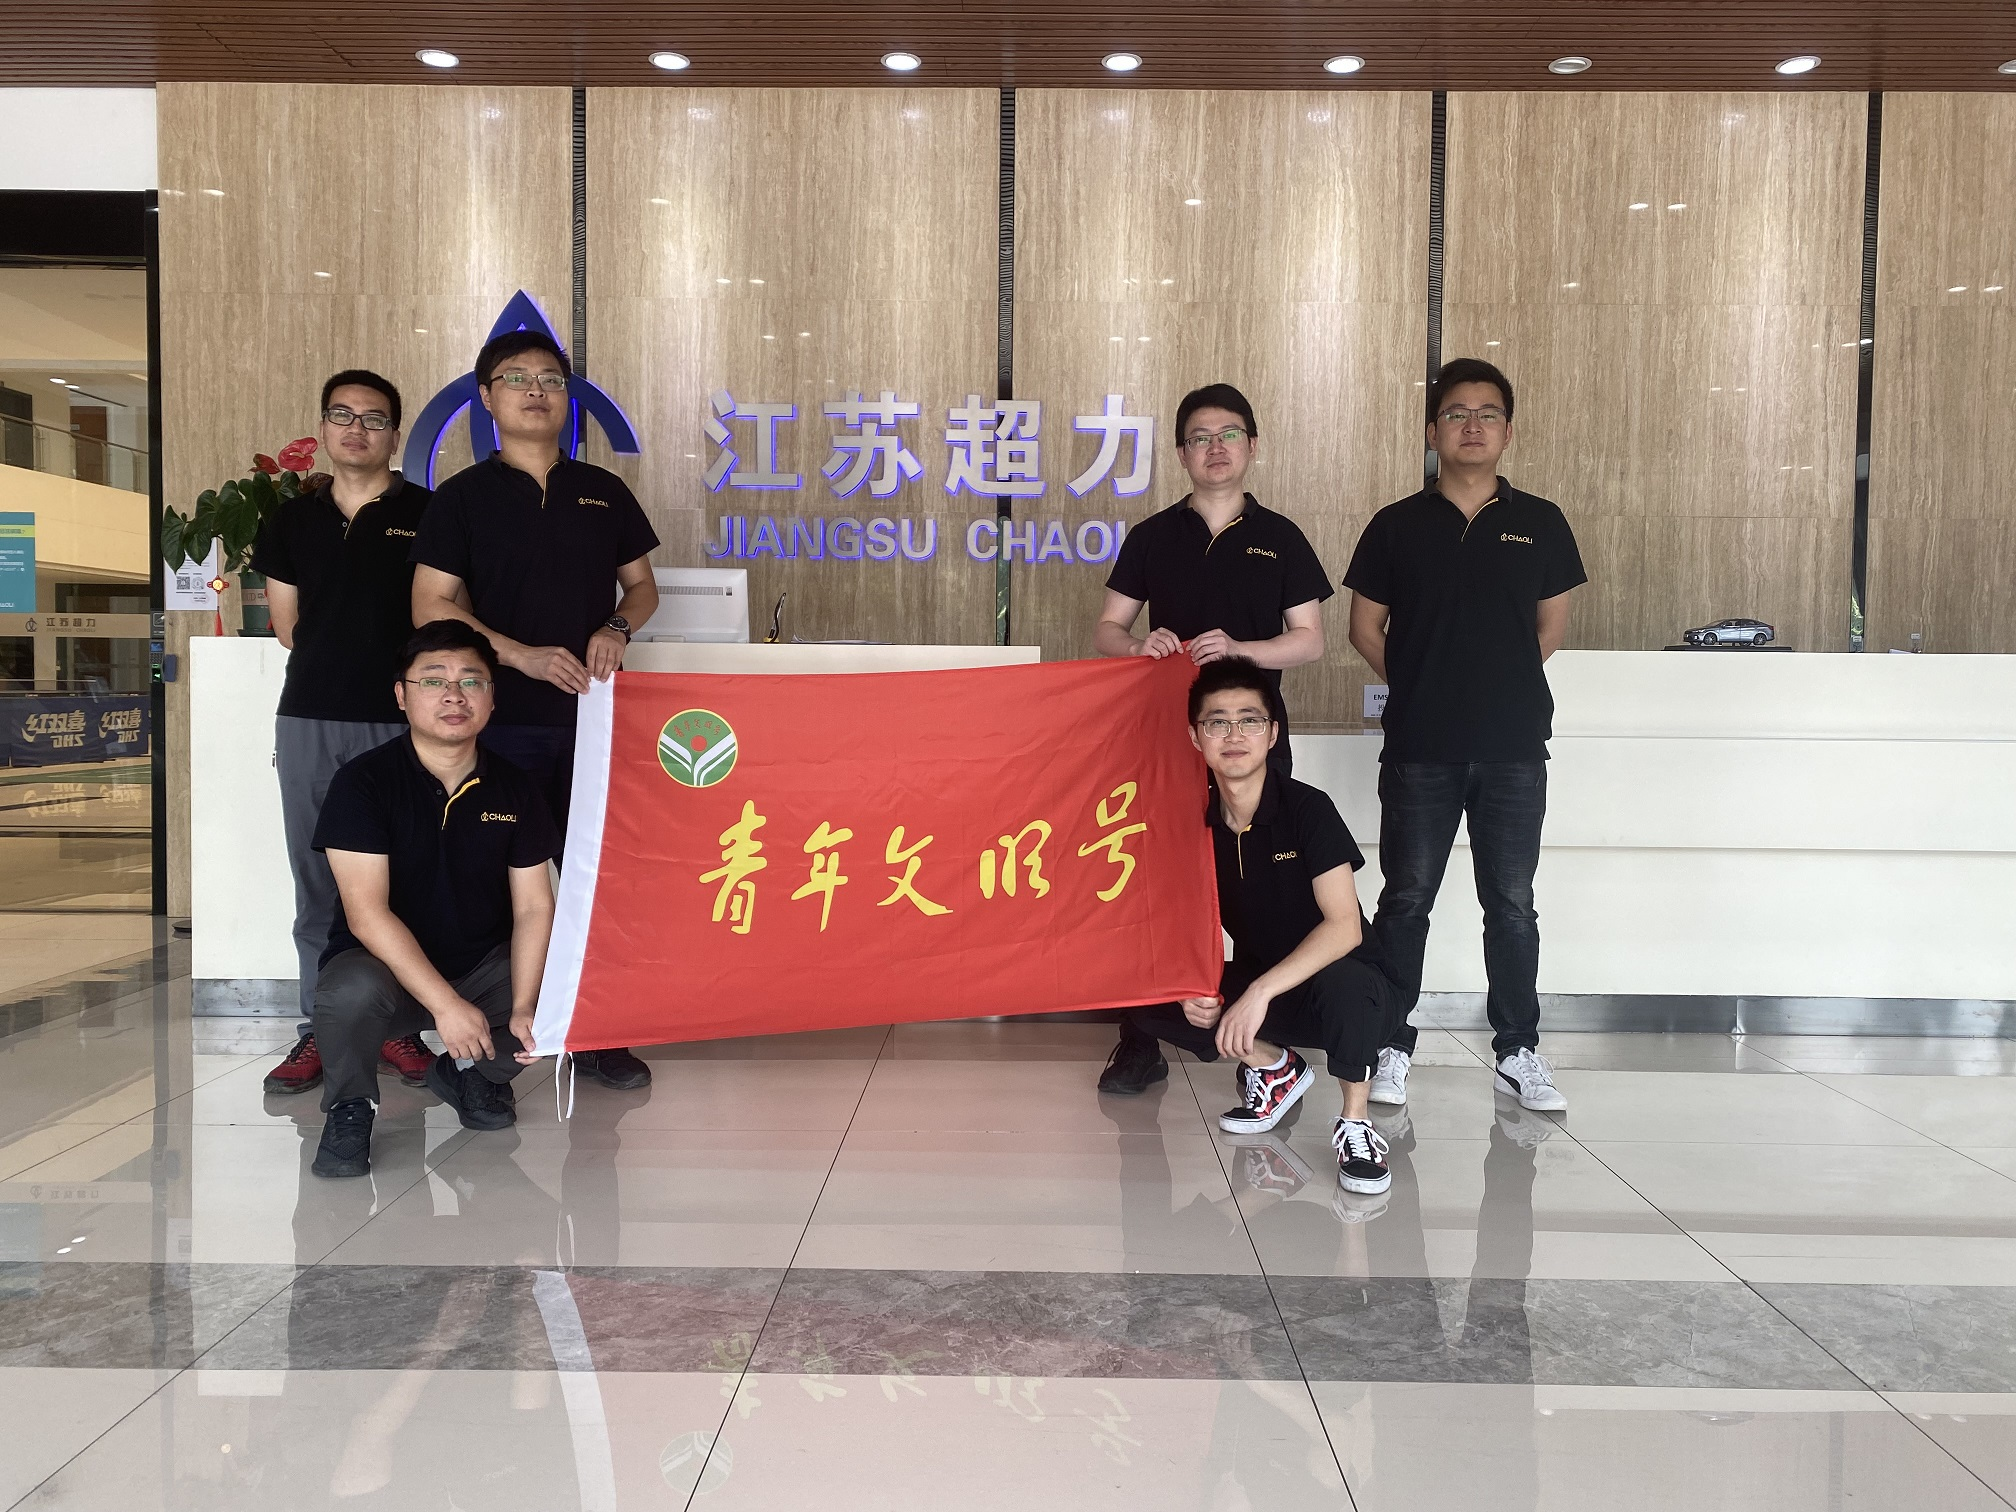 江蘇超力電器有限公司開發部榮獲“青年文明號”稱號